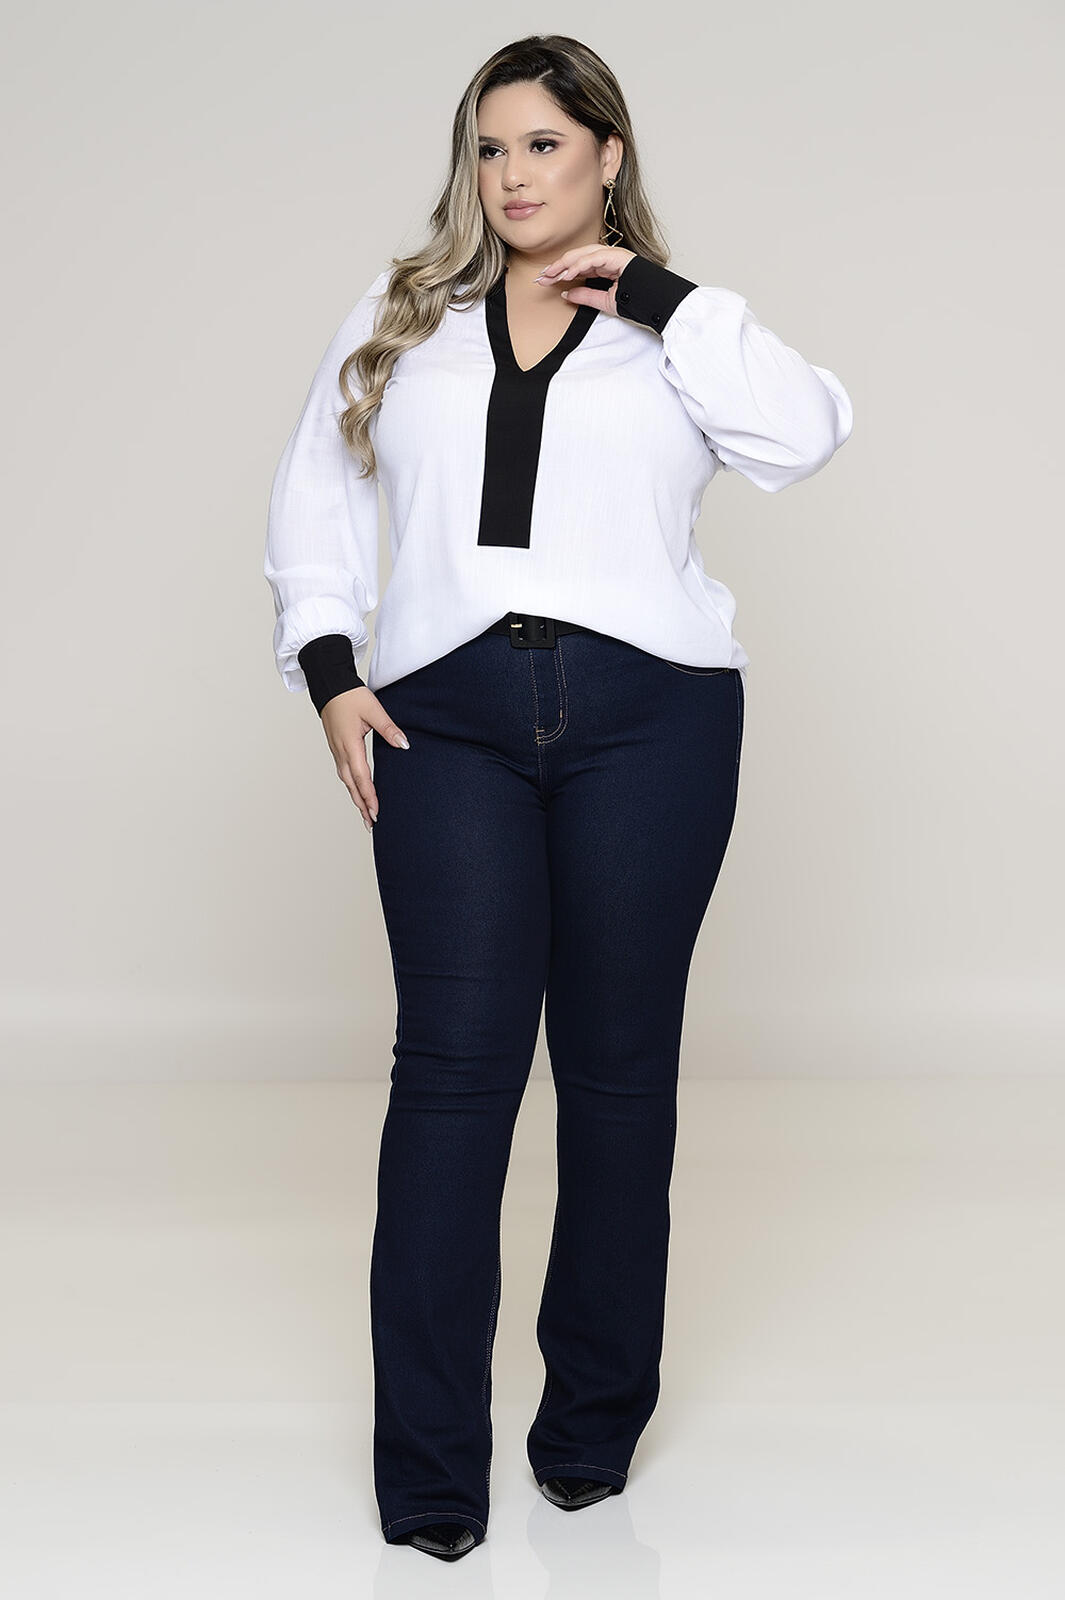 Blusa Plus Size Feminina Decote V em Viscolycra Branca - Estilo Próprio  Moda Feminina Plus Size de Verdade - Loja Online